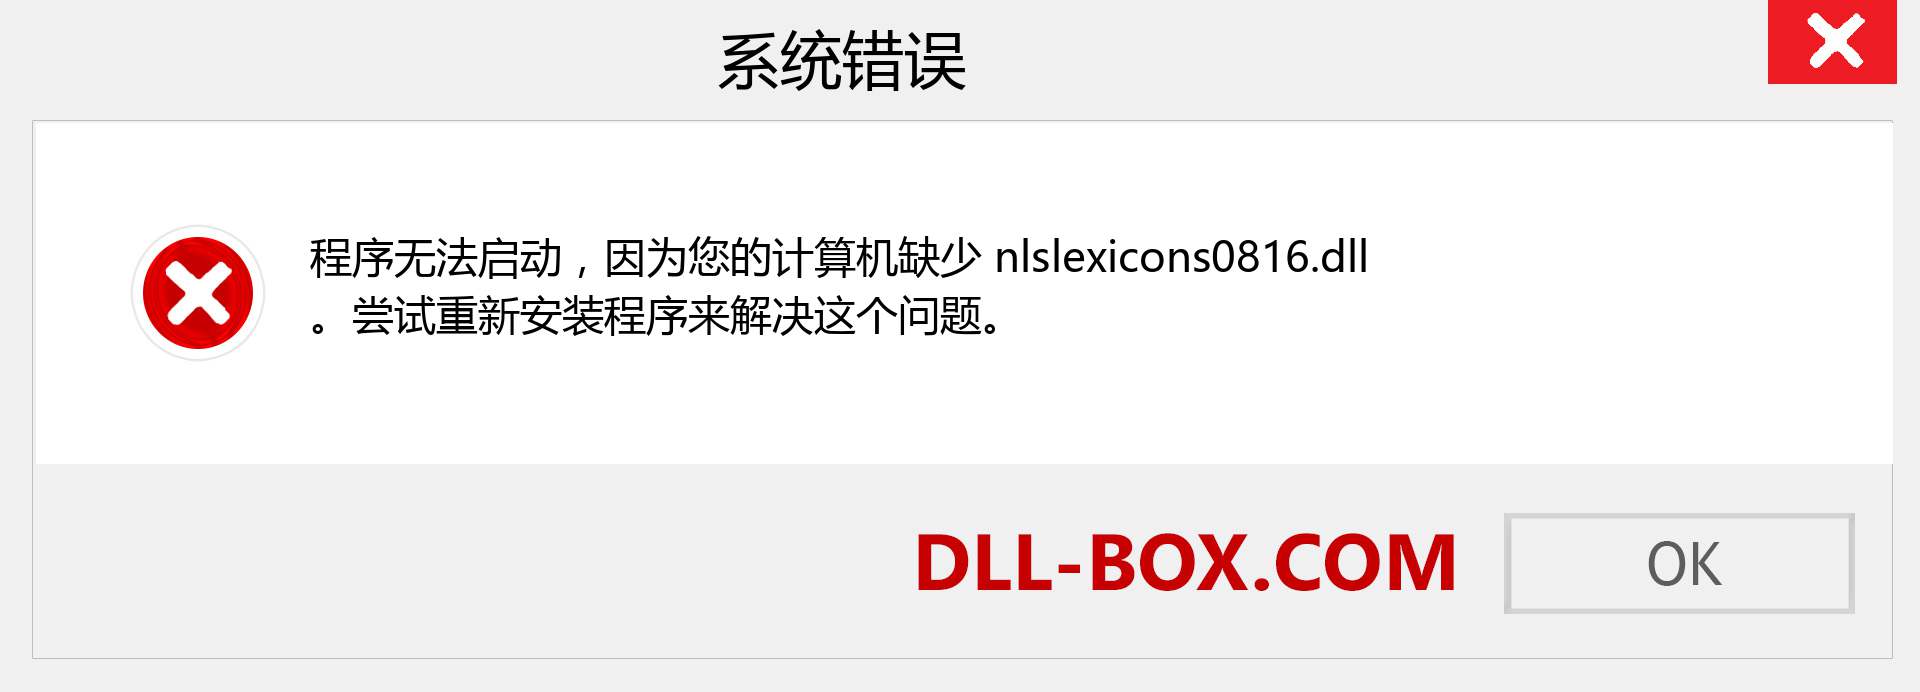 nlslexicons0816.dll 文件丢失？。 适用于 Windows 7、8、10 的下载 - 修复 Windows、照片、图像上的 nlslexicons0816 dll 丢失错误